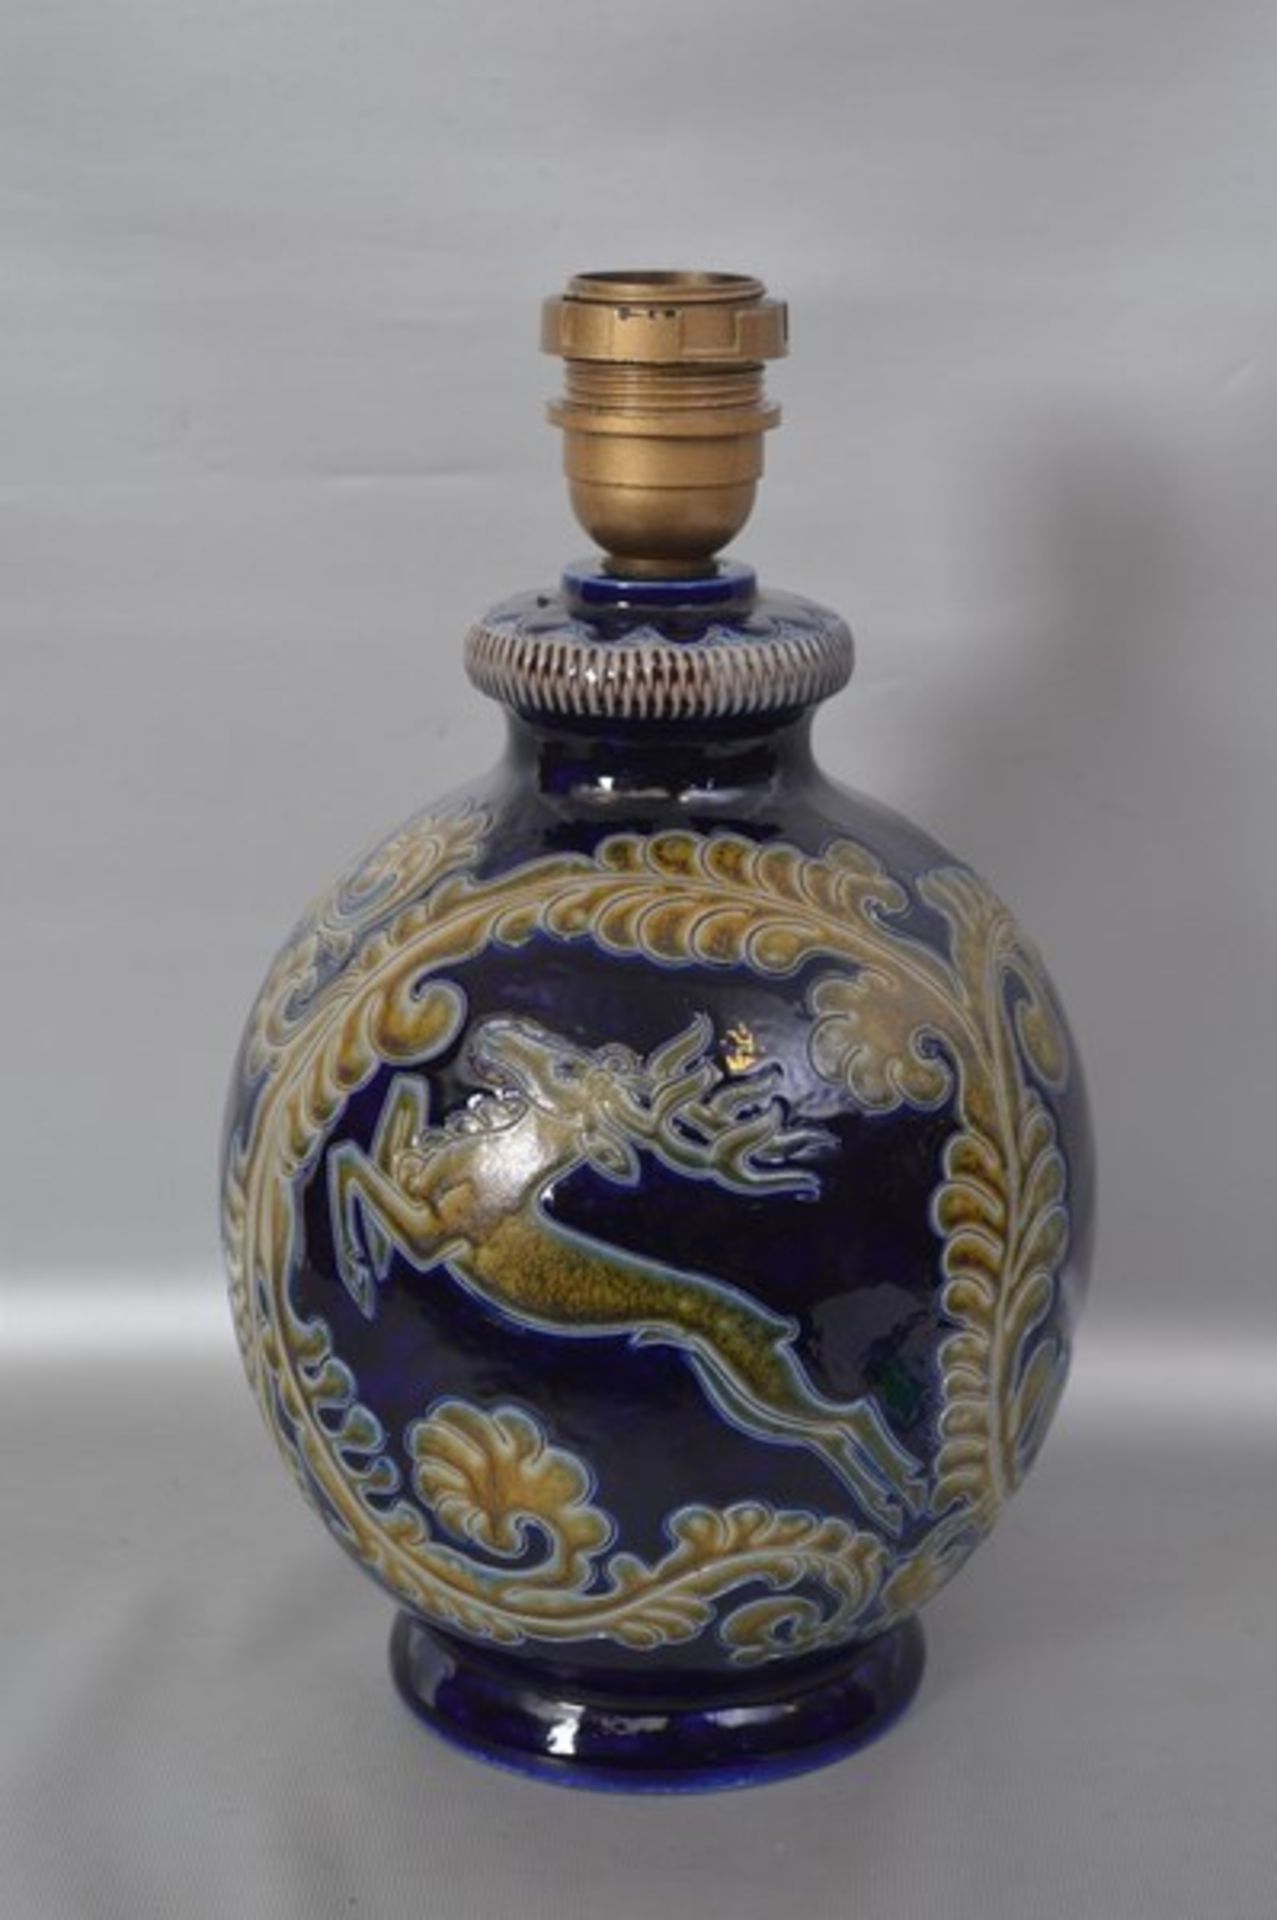 Tischlampe 1-lichtig, Keramik, beigefarbener Ton, geritzt, mit springendem Hirsch und Ranken, blau/